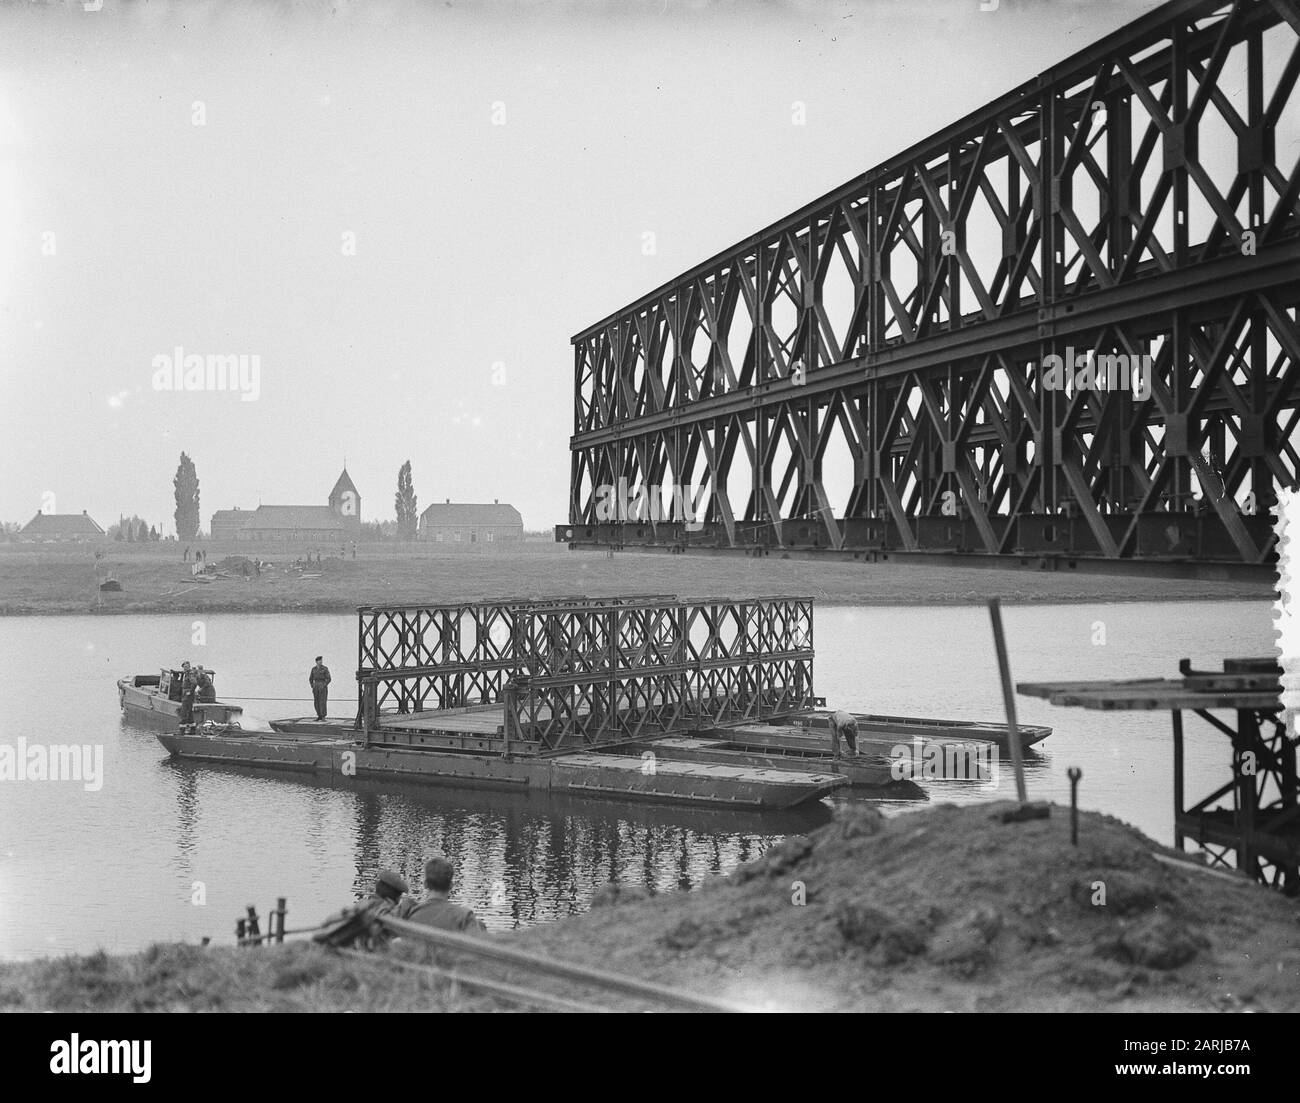 Wijchen. Costruzione di ponti militari sul braccio del Maas Data: 14 ottobre 1953 posizione: Gelderland, Wijchen Parole Chiave: Edilizia, ponti Foto Stock